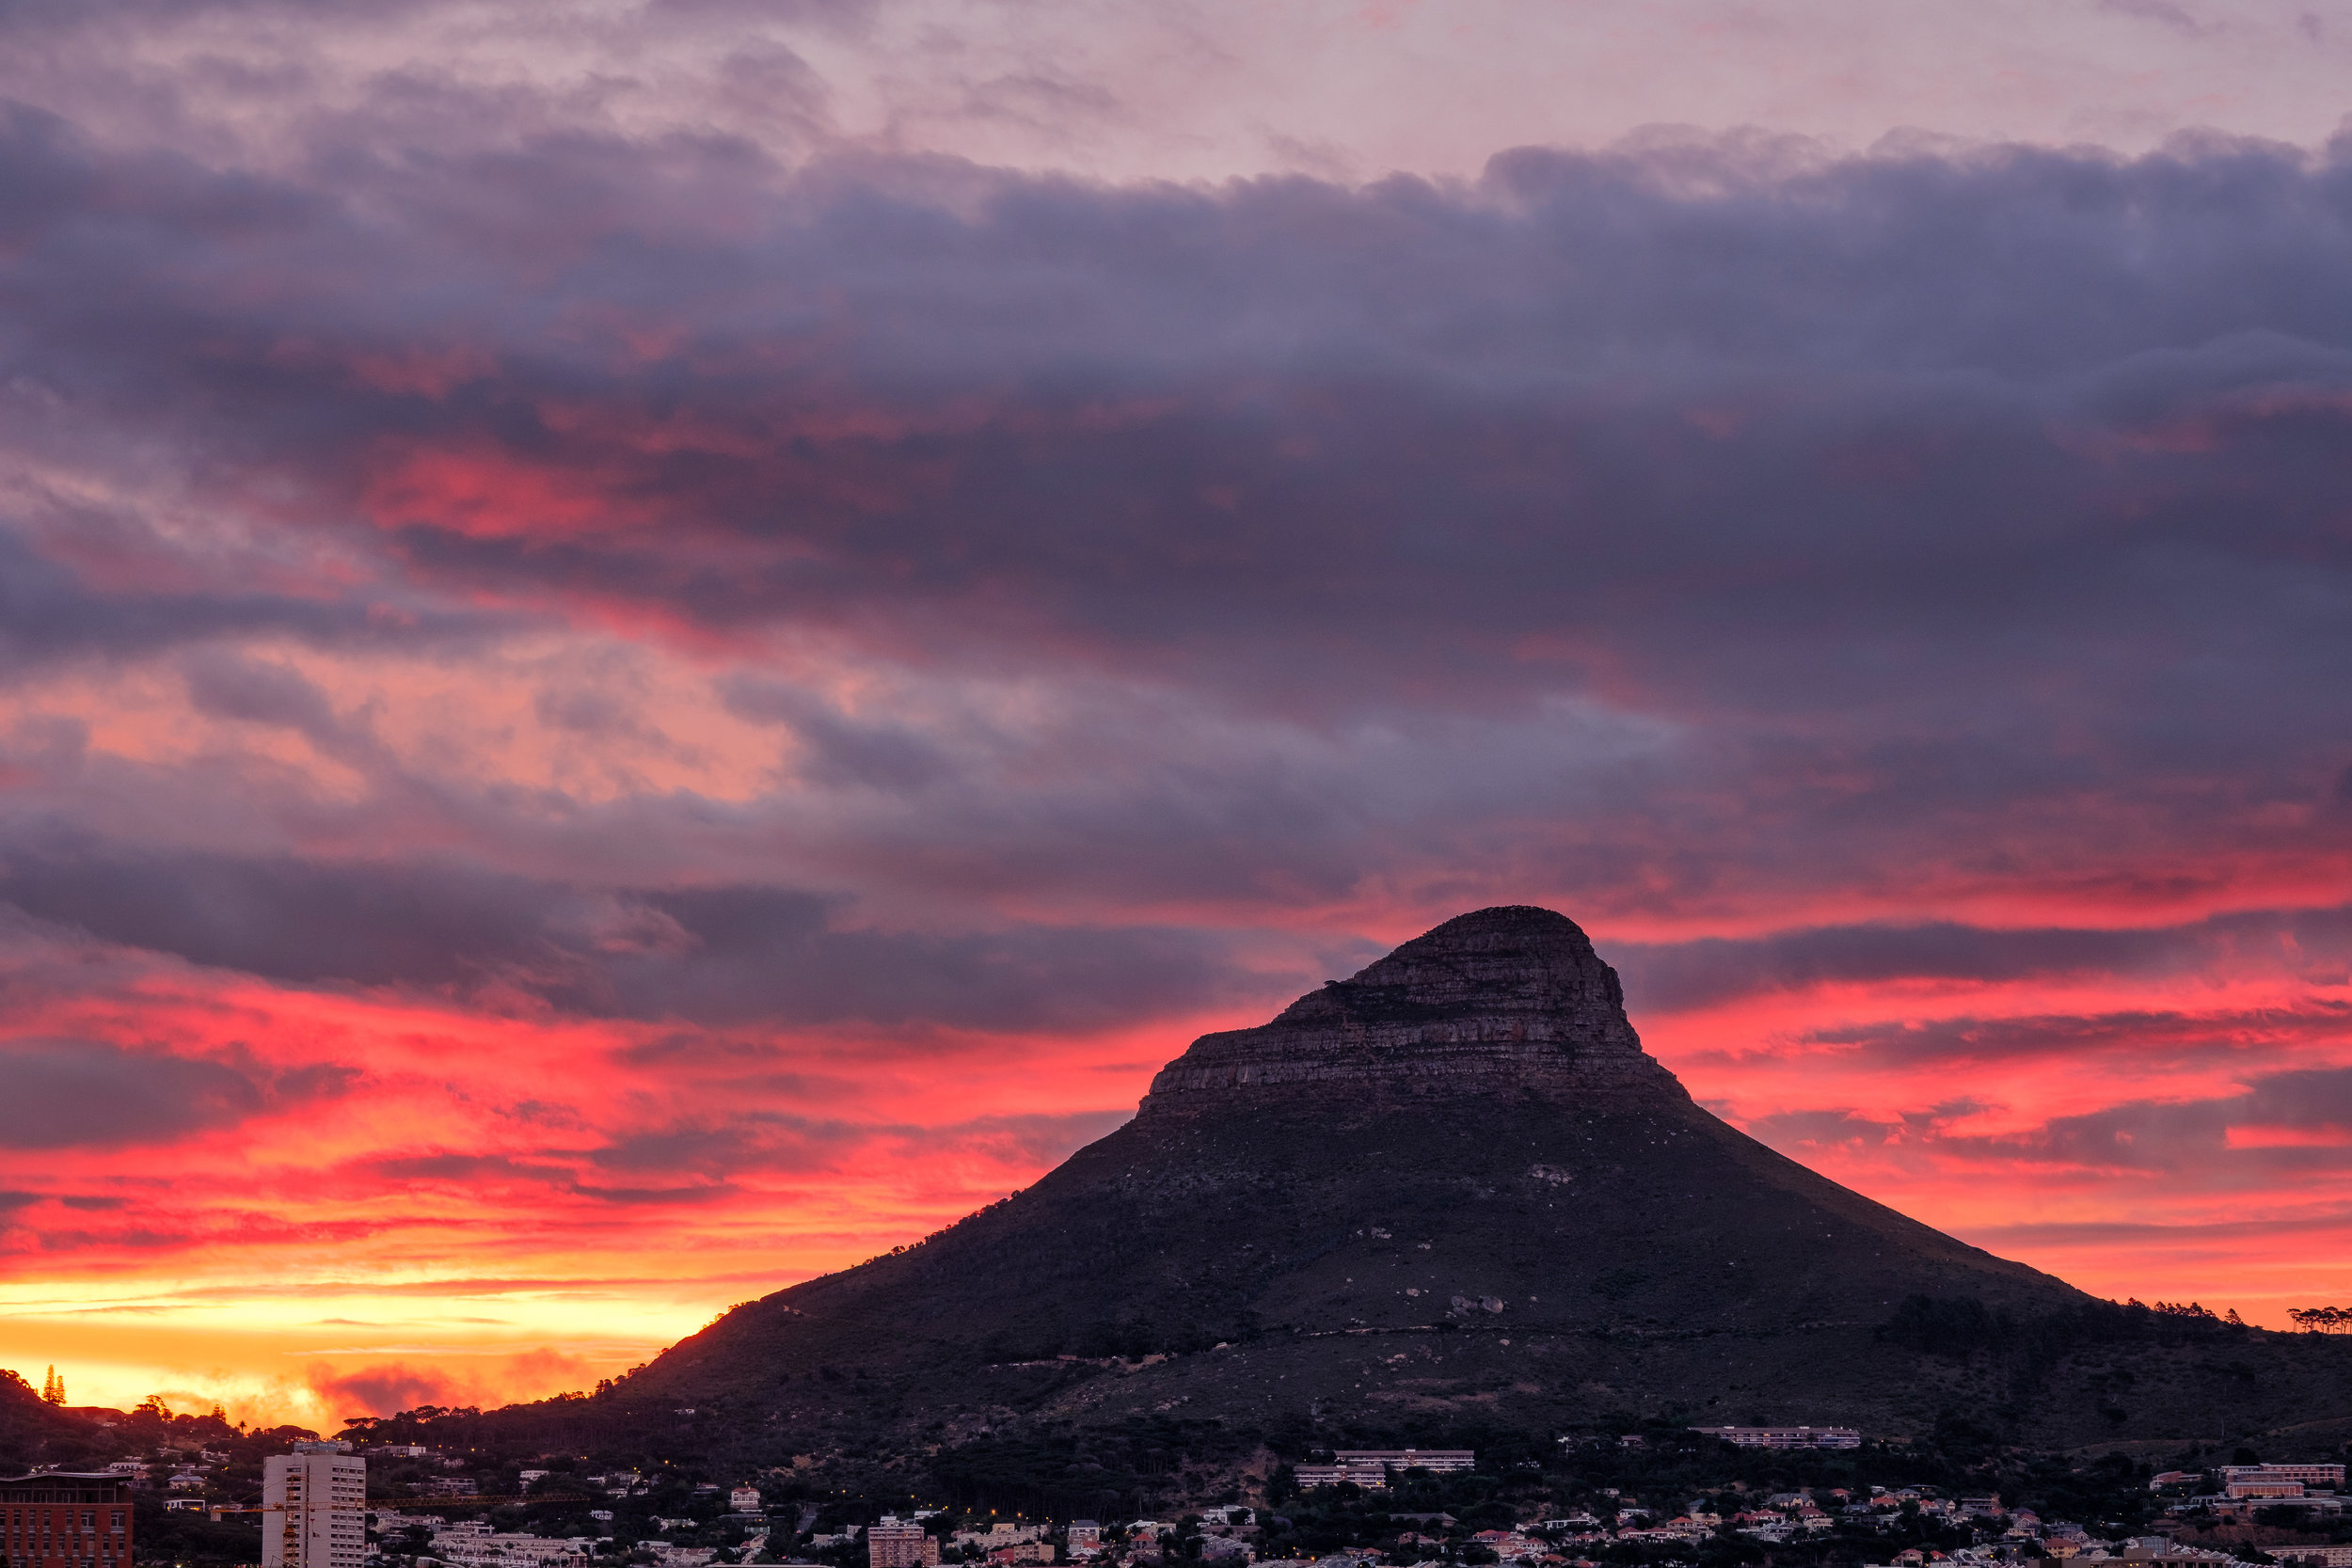  Lion's Head Mountain, Cape Town.&nbsp;November, 2017. 